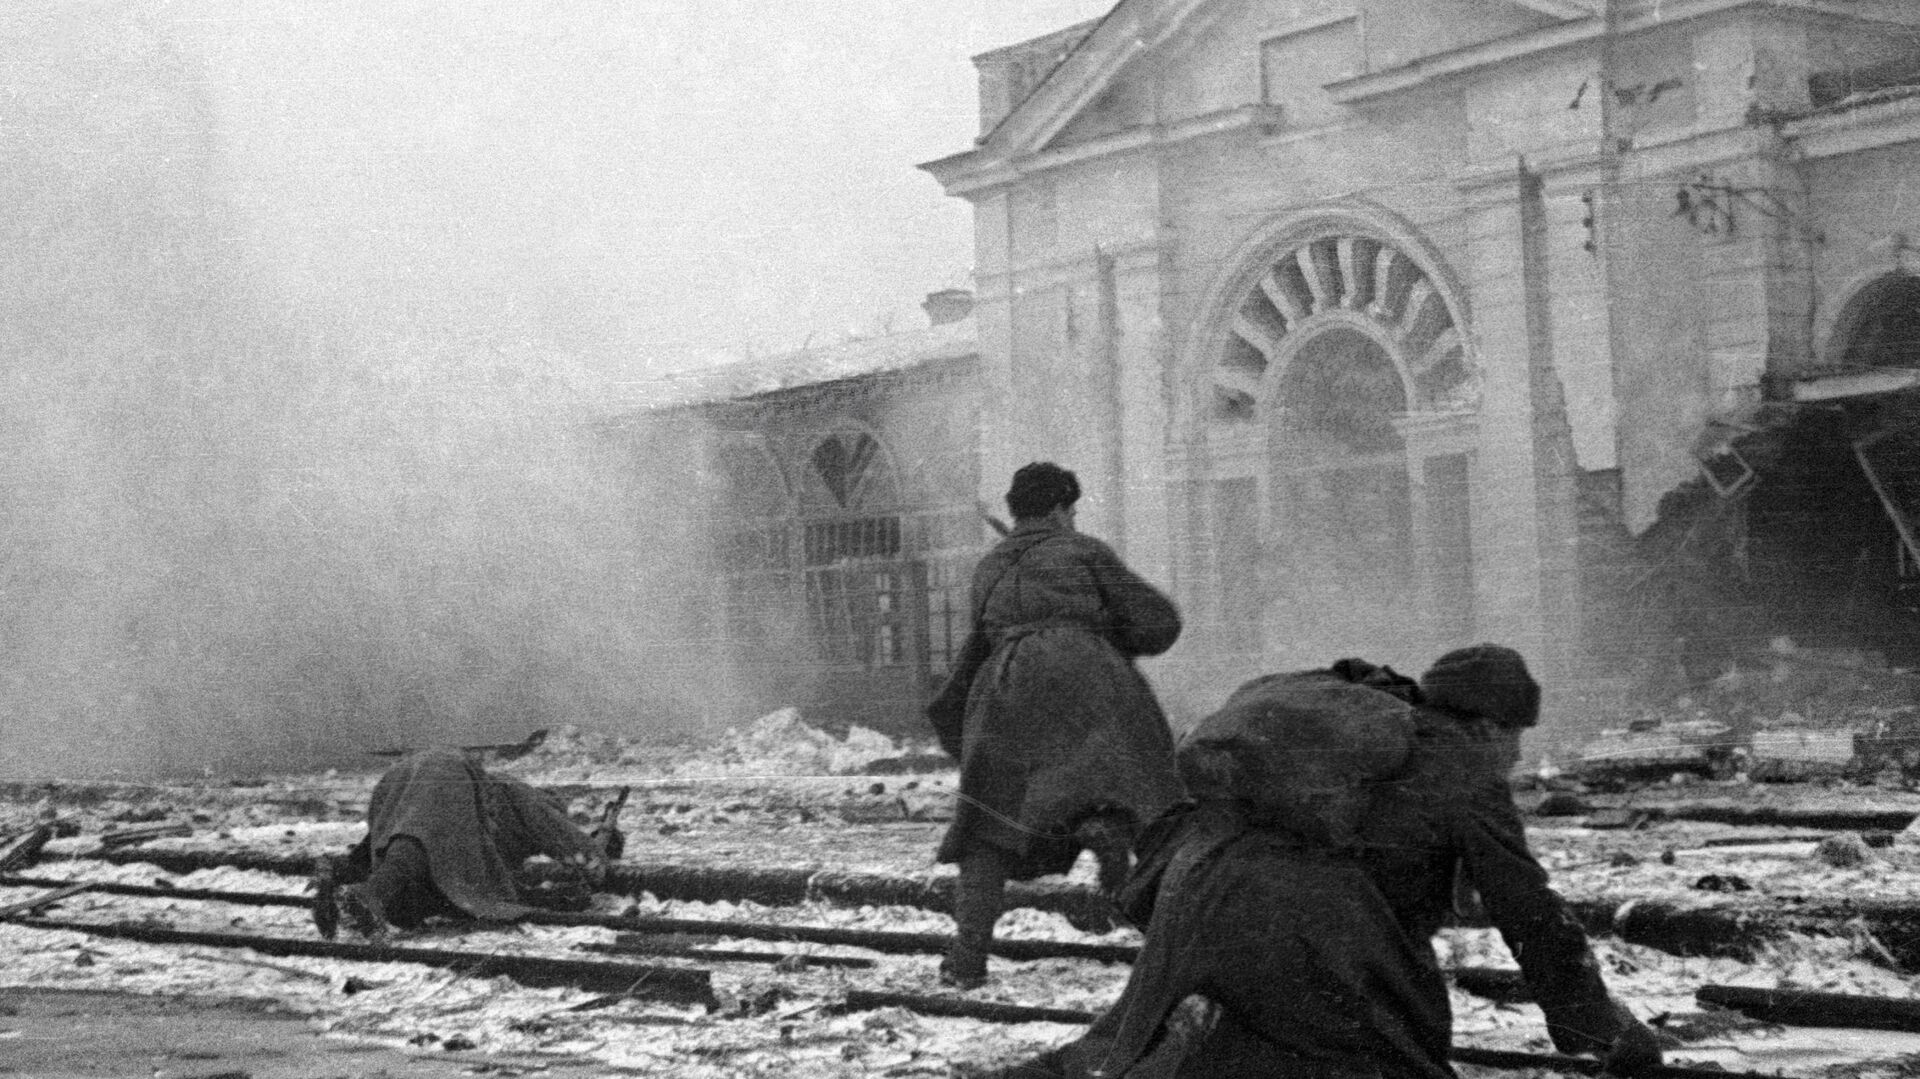 Совјетски војници се боре против немачких окупатора на станици града Ворошиловска (данашњи Ставропољ), Други светски рат. - Sputnik Србија, 1920, 06.09.2021